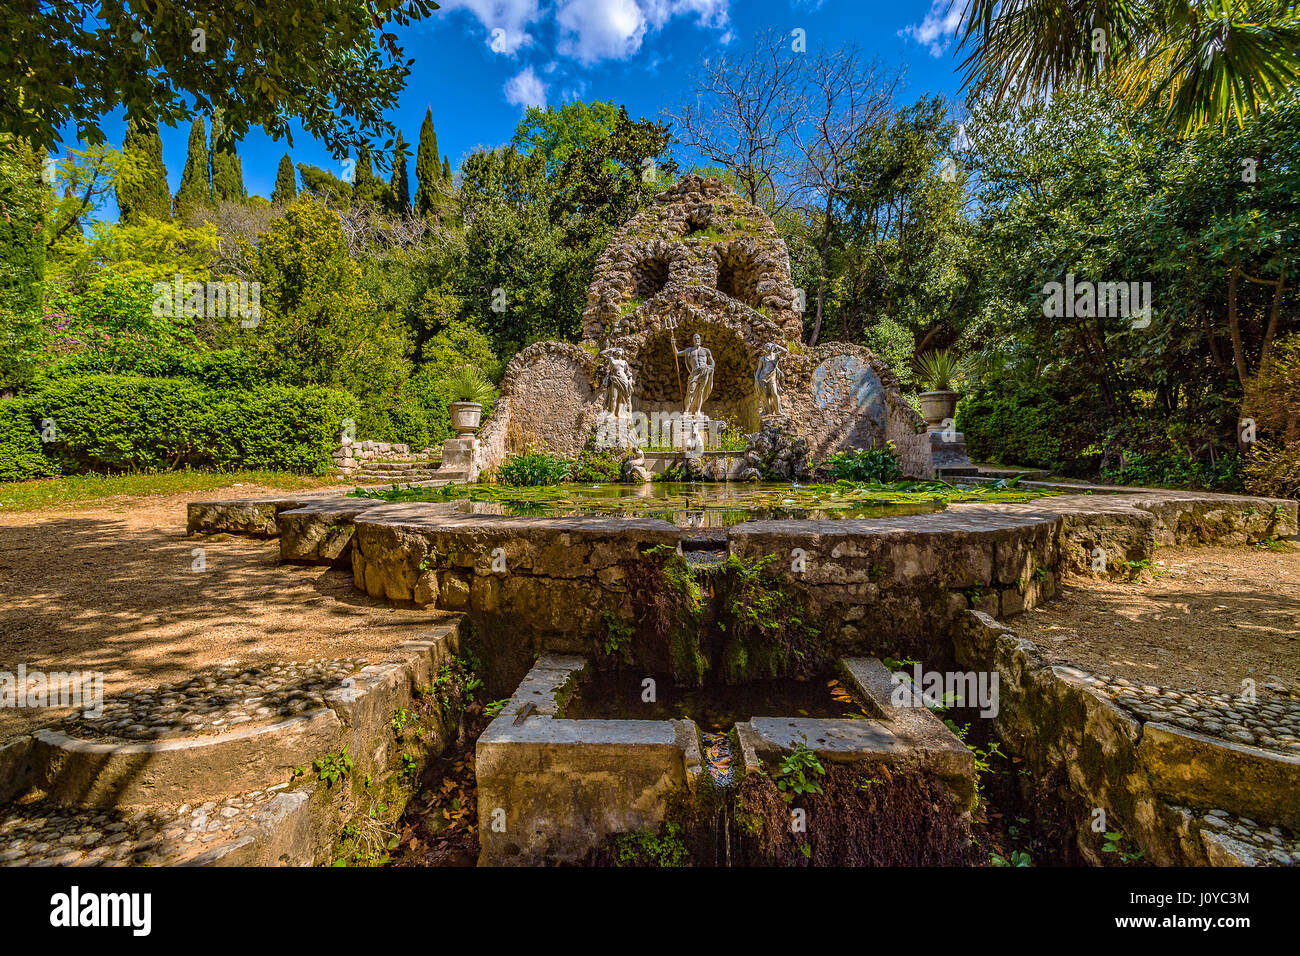 La Croatie Dalmatie arboretum de Trsteno - Fontaine de Neptune Banque D'Images